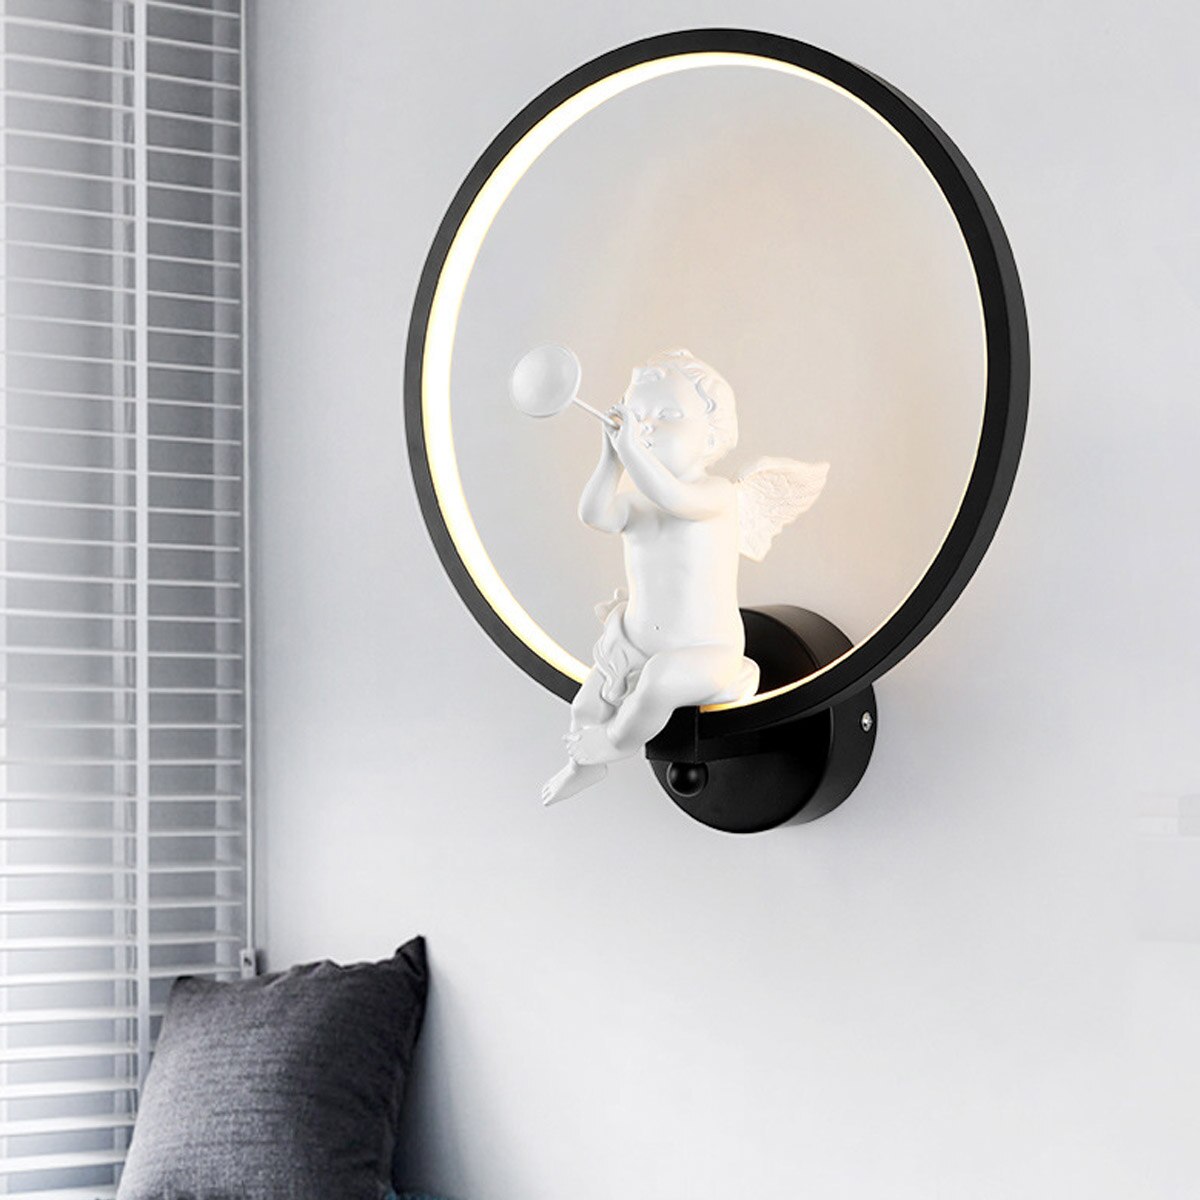 Modern Wall Lamp with Angel Figurine